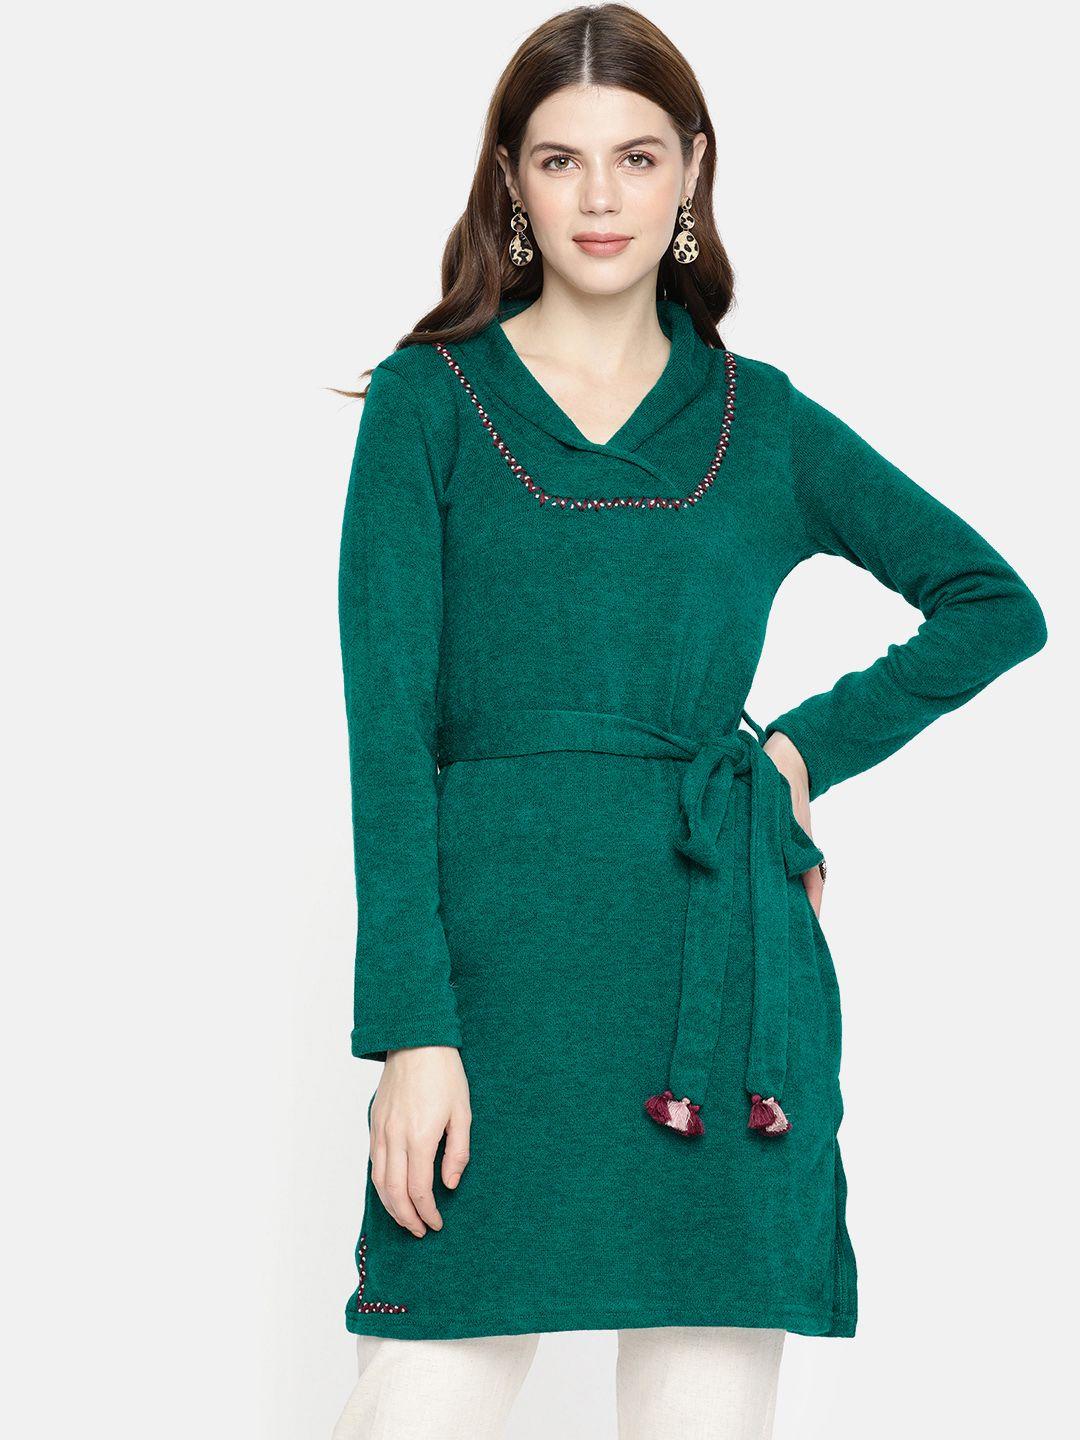 global-desi-women-green-solid-sweater-tunic